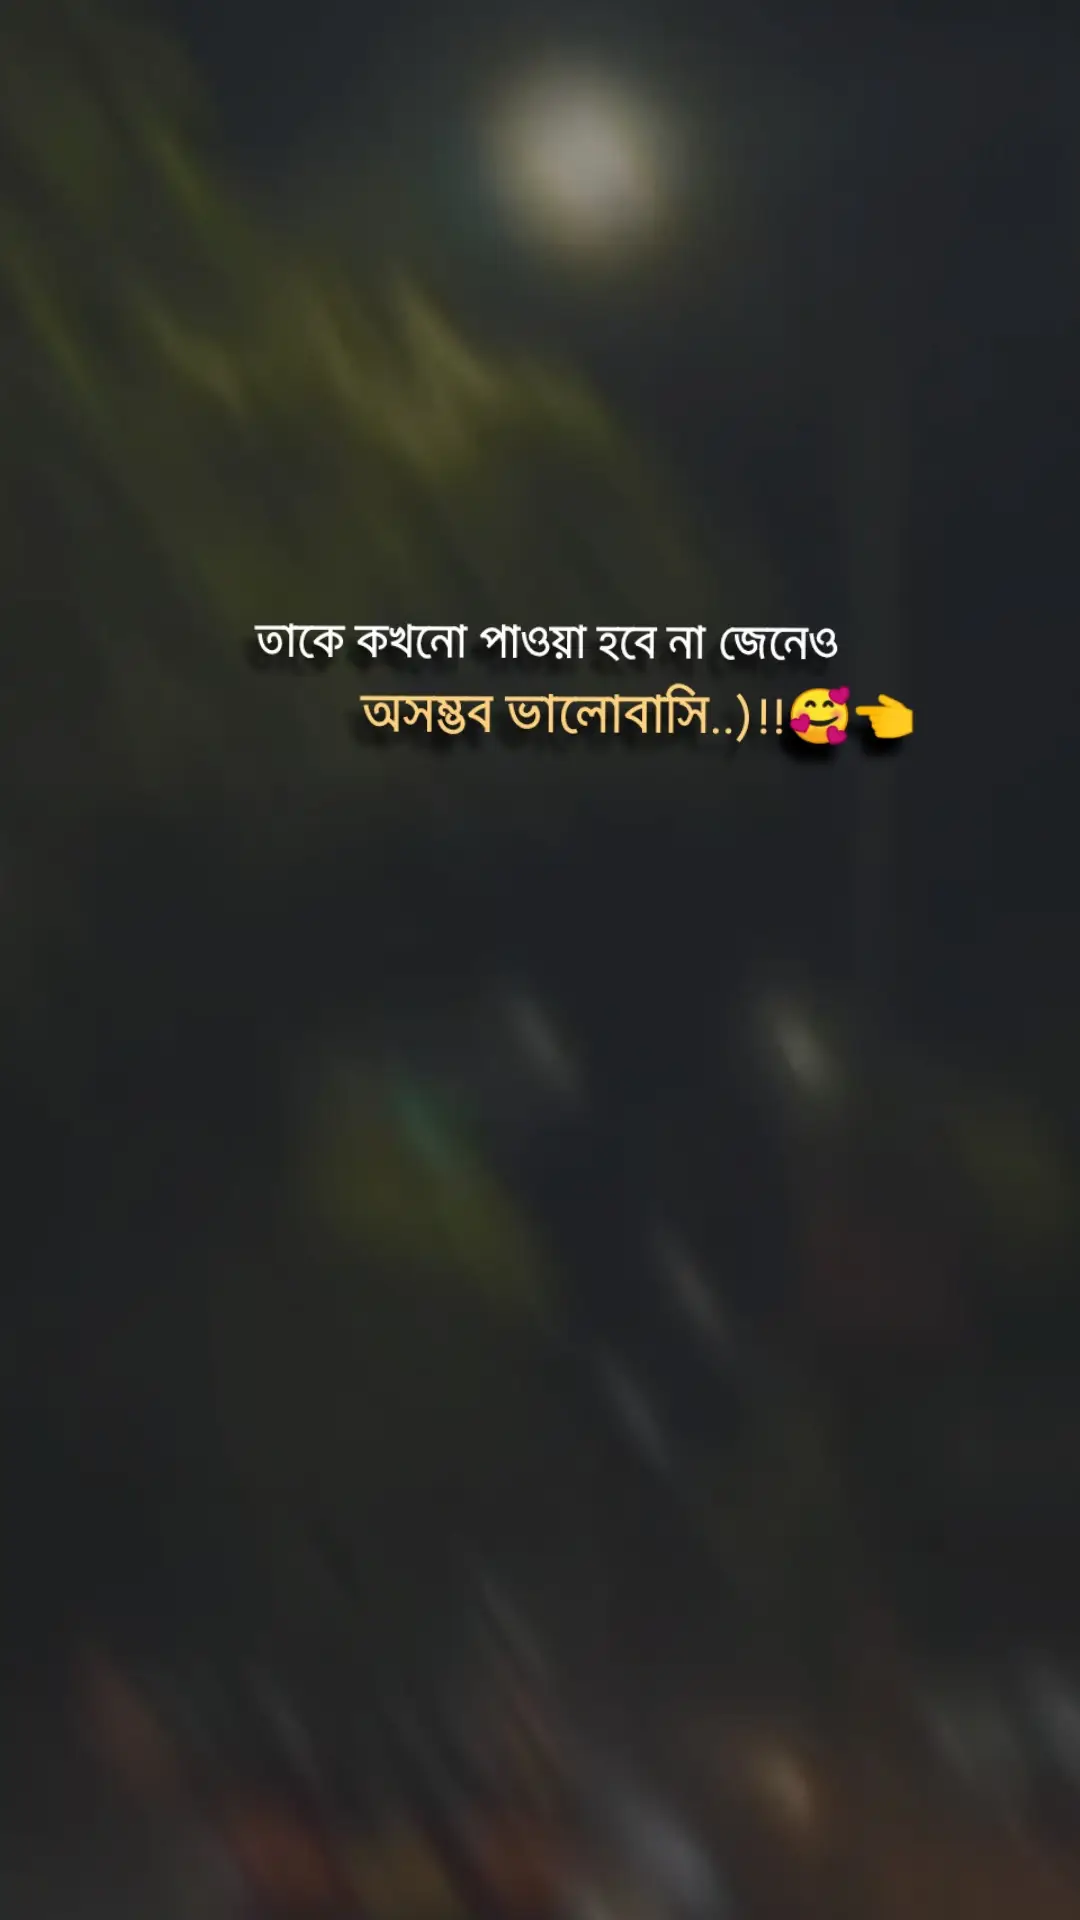 ওরা মনের গোপন চিনে না.. ওরা হৃদয়ে রং জানে না..)!!🥰👈#foryou #foryoupage #sadstory #viral #official #trending #bdtiktokofficial #tiktokbangladesh #ইনশাআল্লাহ_যাবে_foryou_তে। 